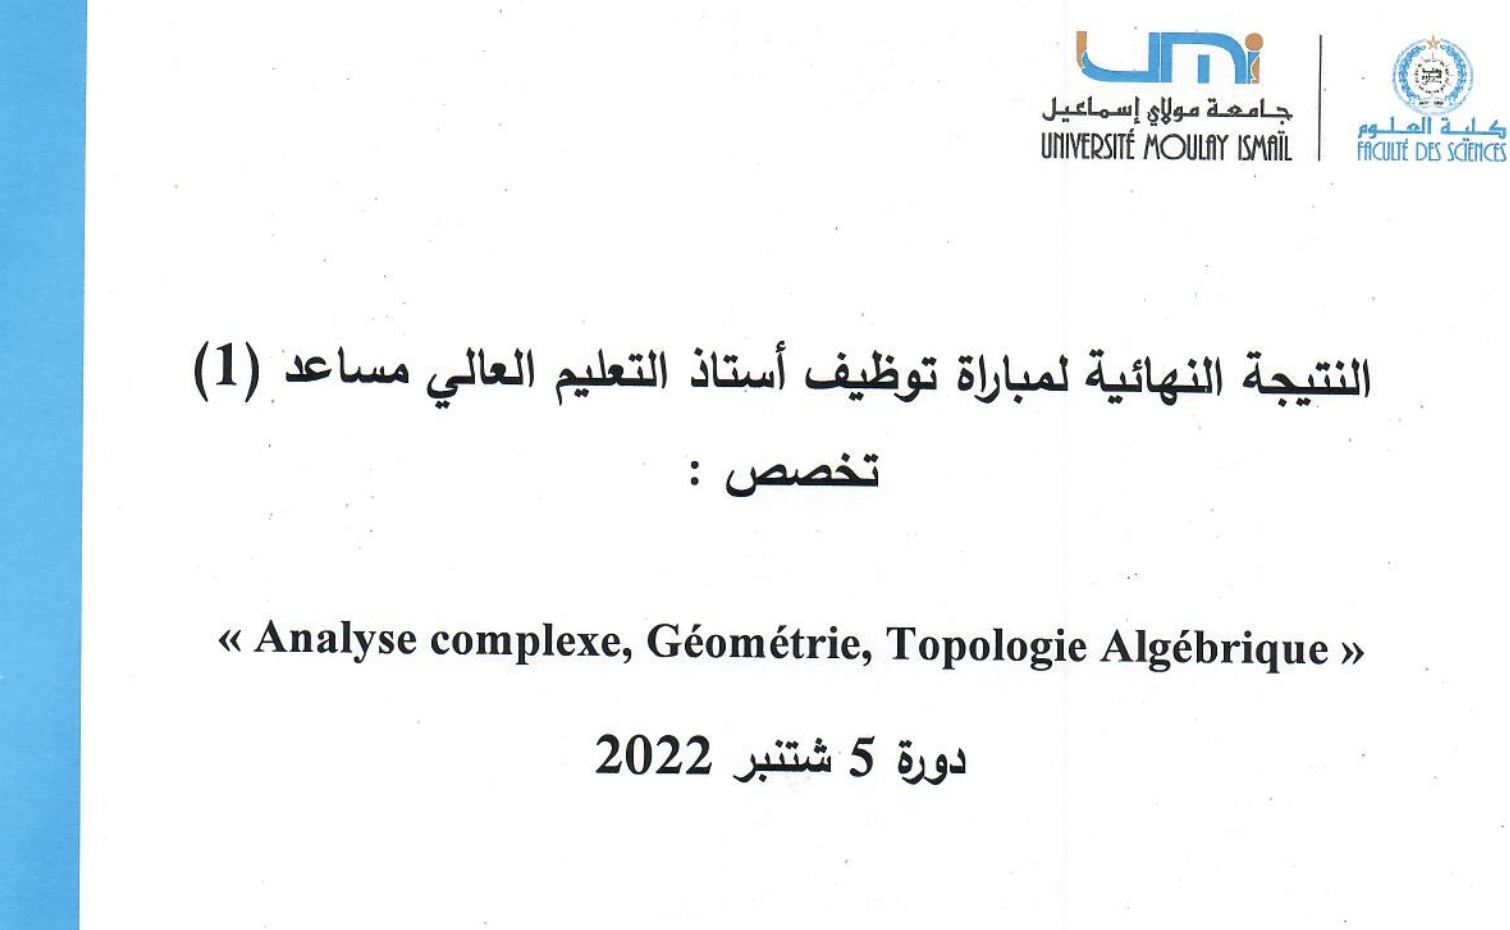 النتيجة النهائية لمباراة توظيف أستاذ التعليم العالي مساعد 1 تخصص Analyse complexe, Géométrie, Topologie Algébrique